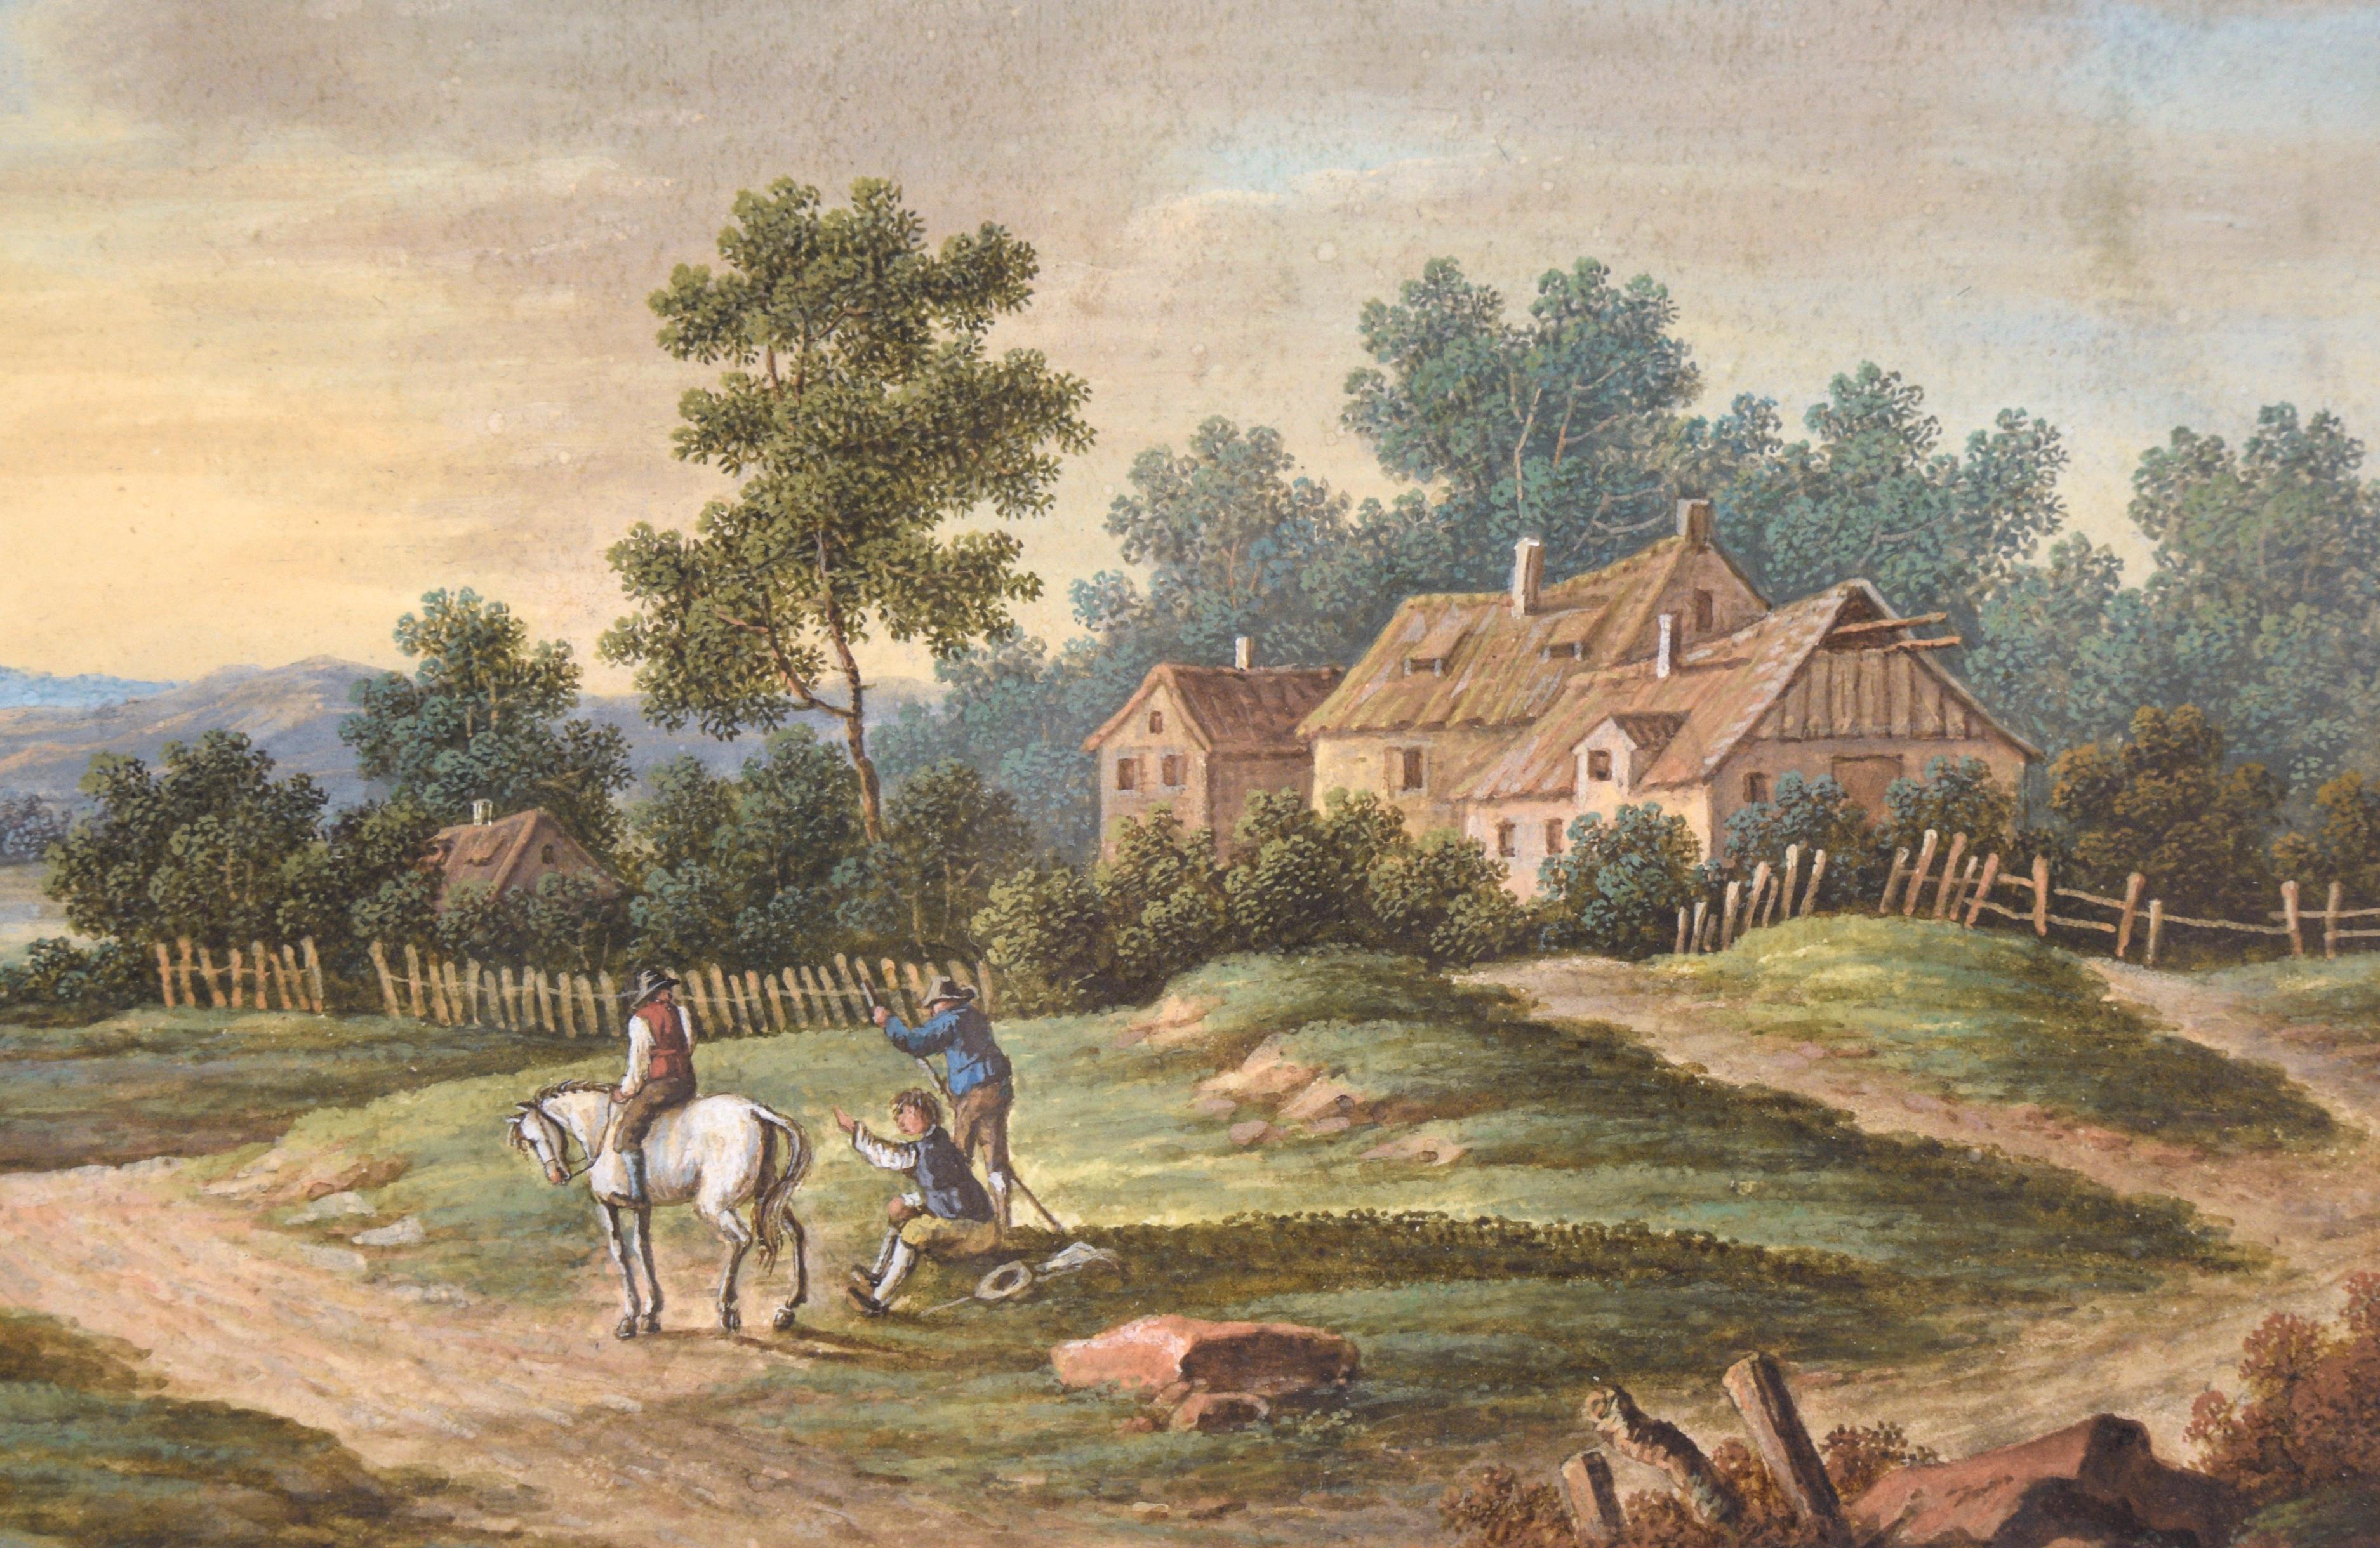 La maison de campagne - Paysage agricole

Scène très détaillée d'une maison de campagne, de travailleurs et d'un lièvre avec cavalier par un artiste inconnu (19e siècle). Cinq personnes - dont une à cheval - travaillent près des maisons de campagne.